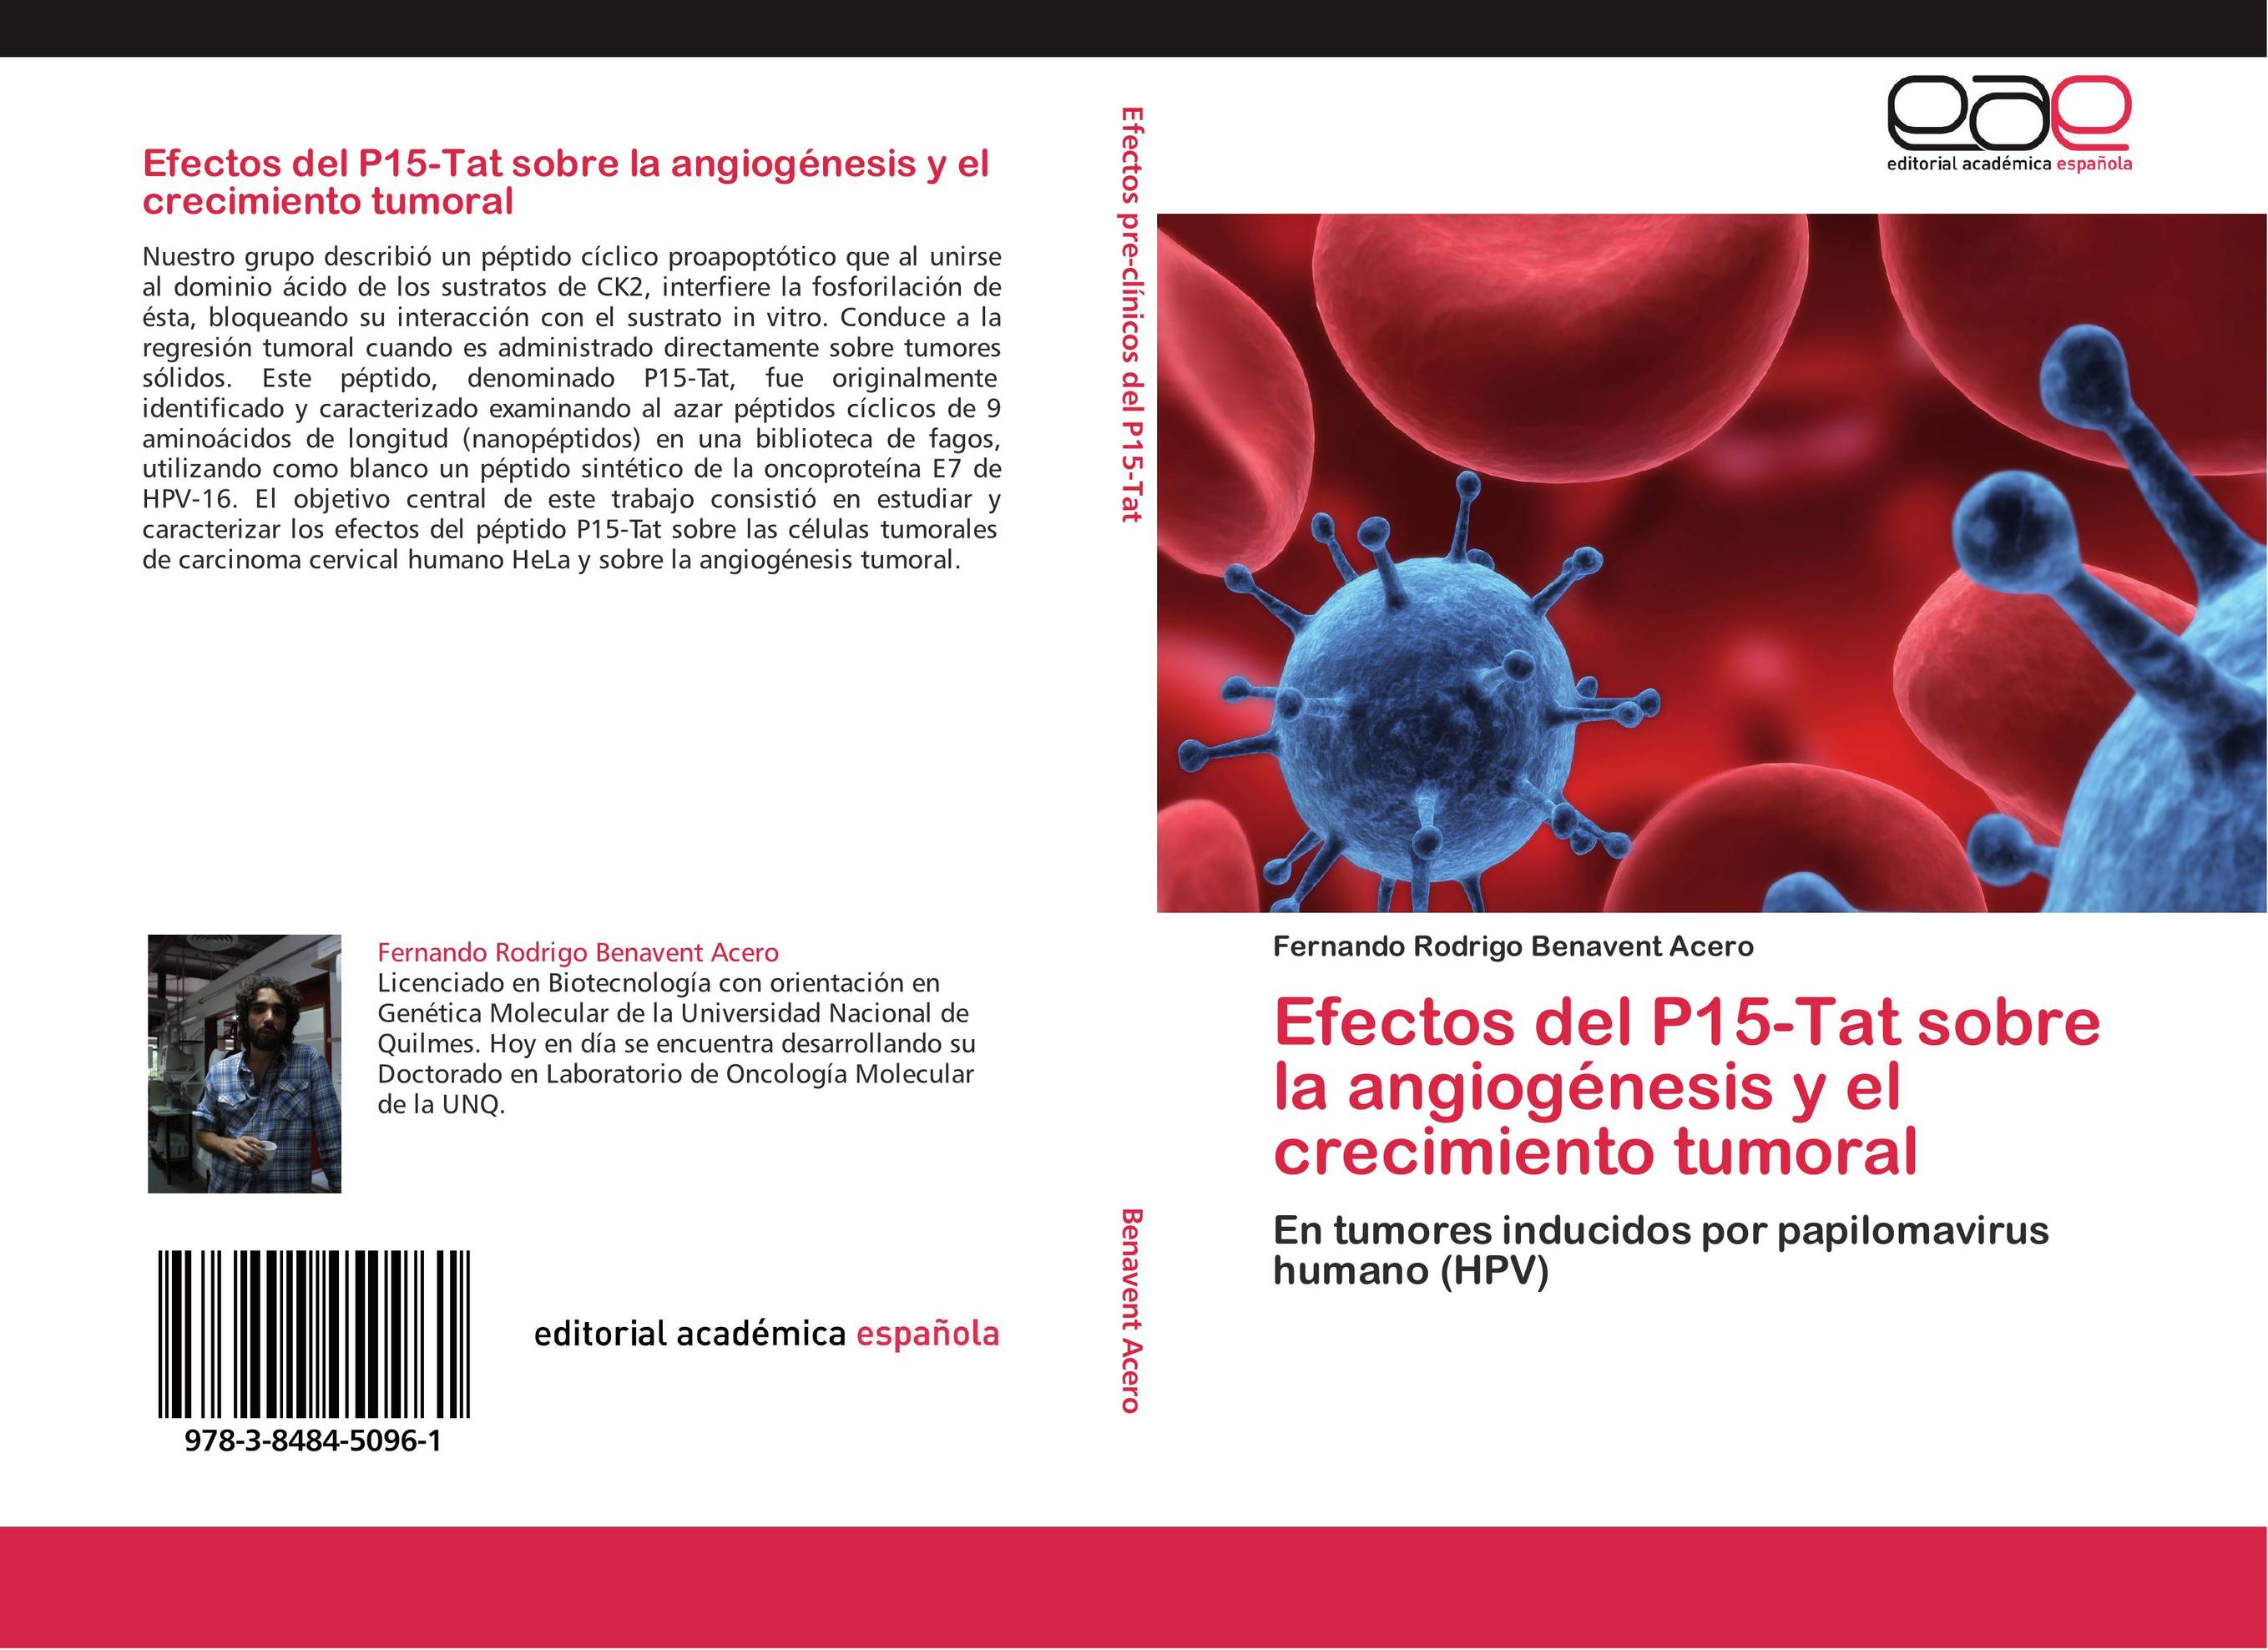 Efectos del P15-Tat sobre la angiogénesis y el crecimiento tumoral